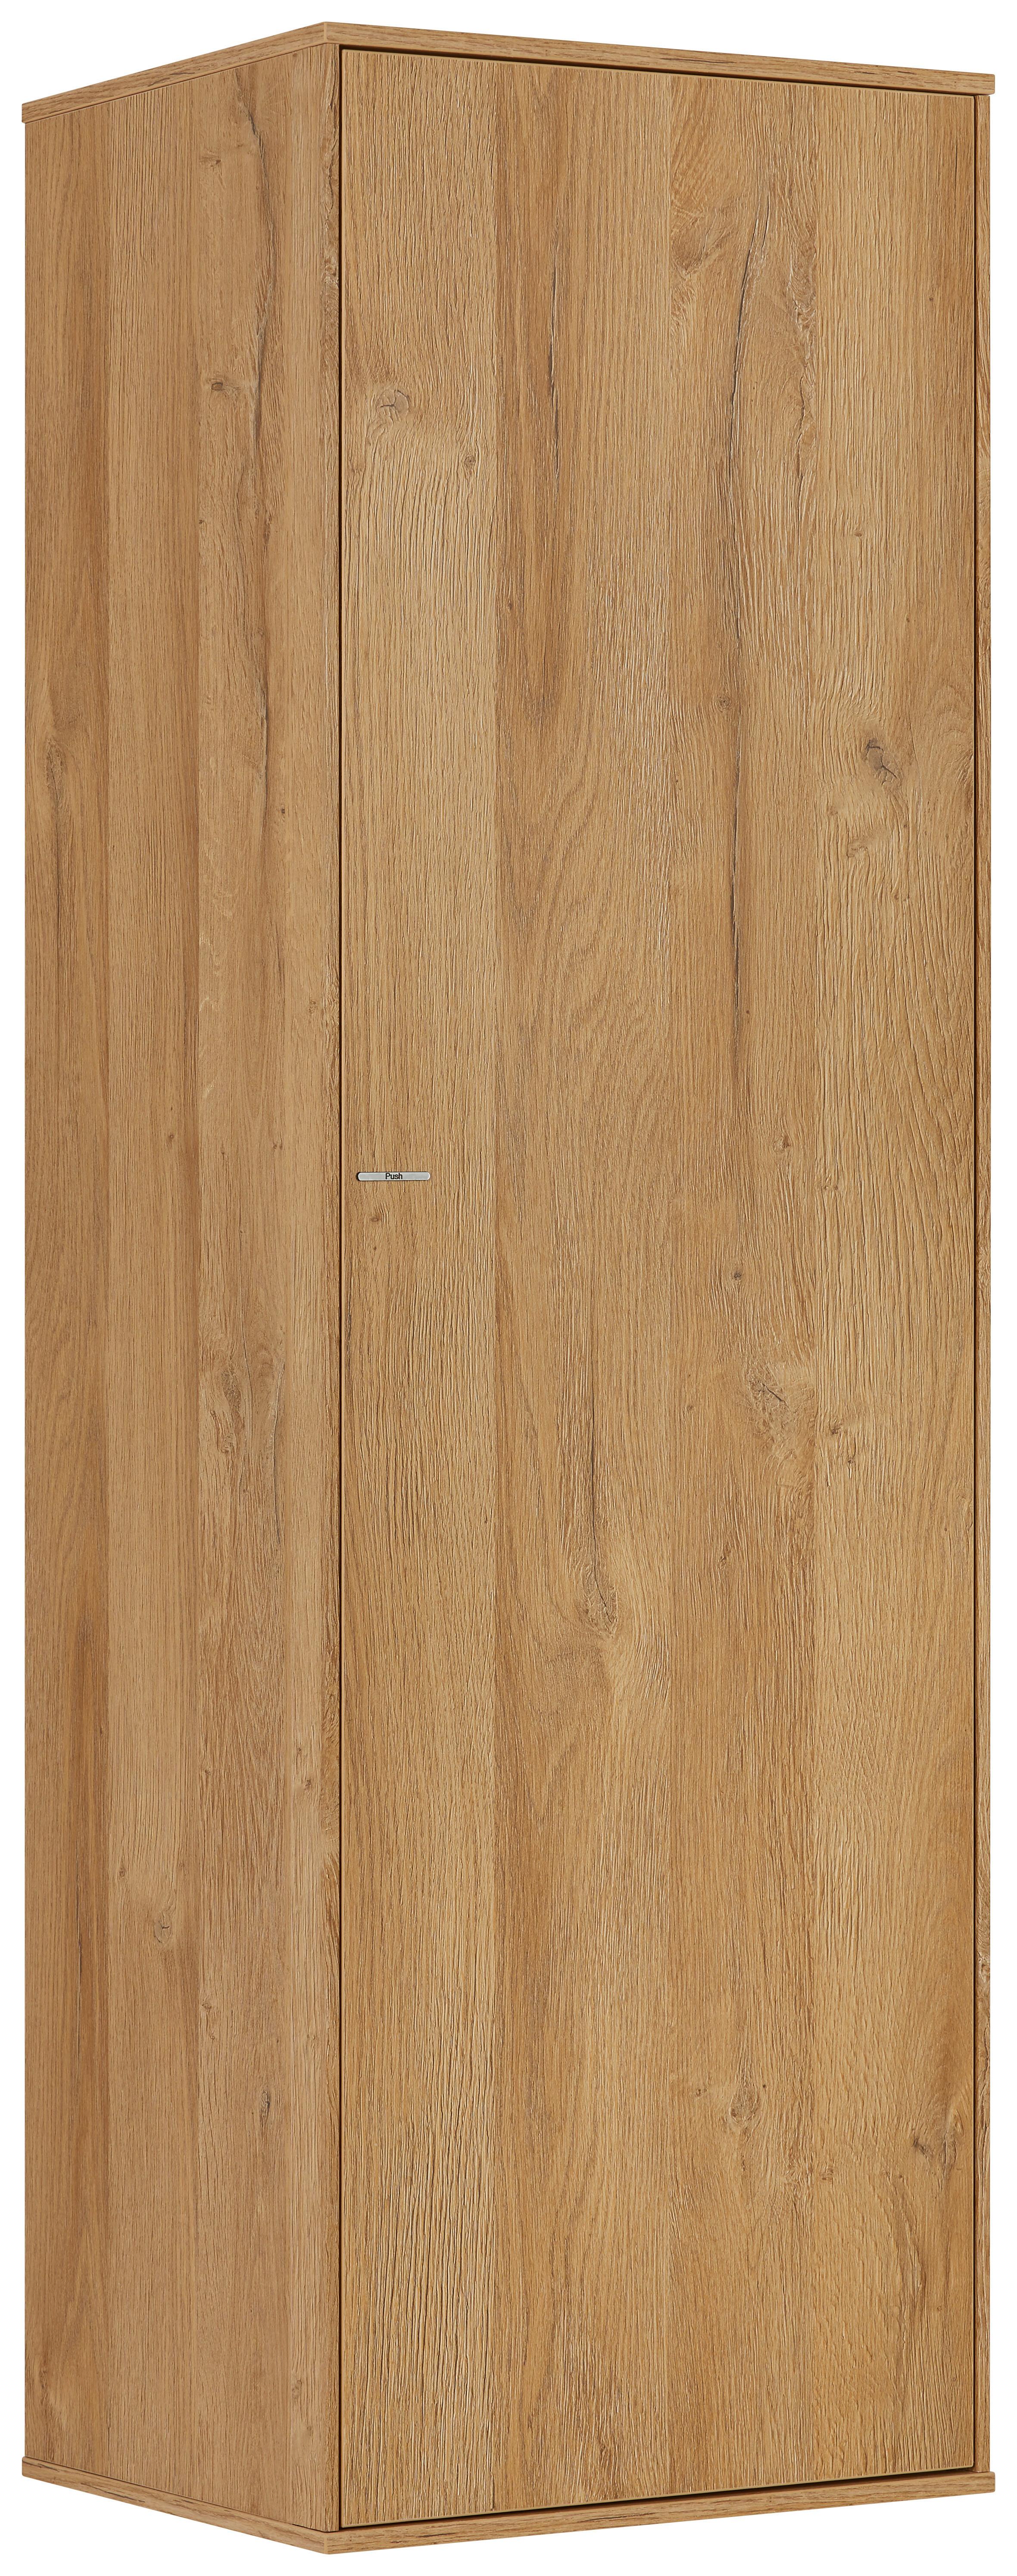 Závěsná Skříňka Max Box - barvy dubu, Moderní, kompozitní dřevo (38/120/32cm) - Premium Living